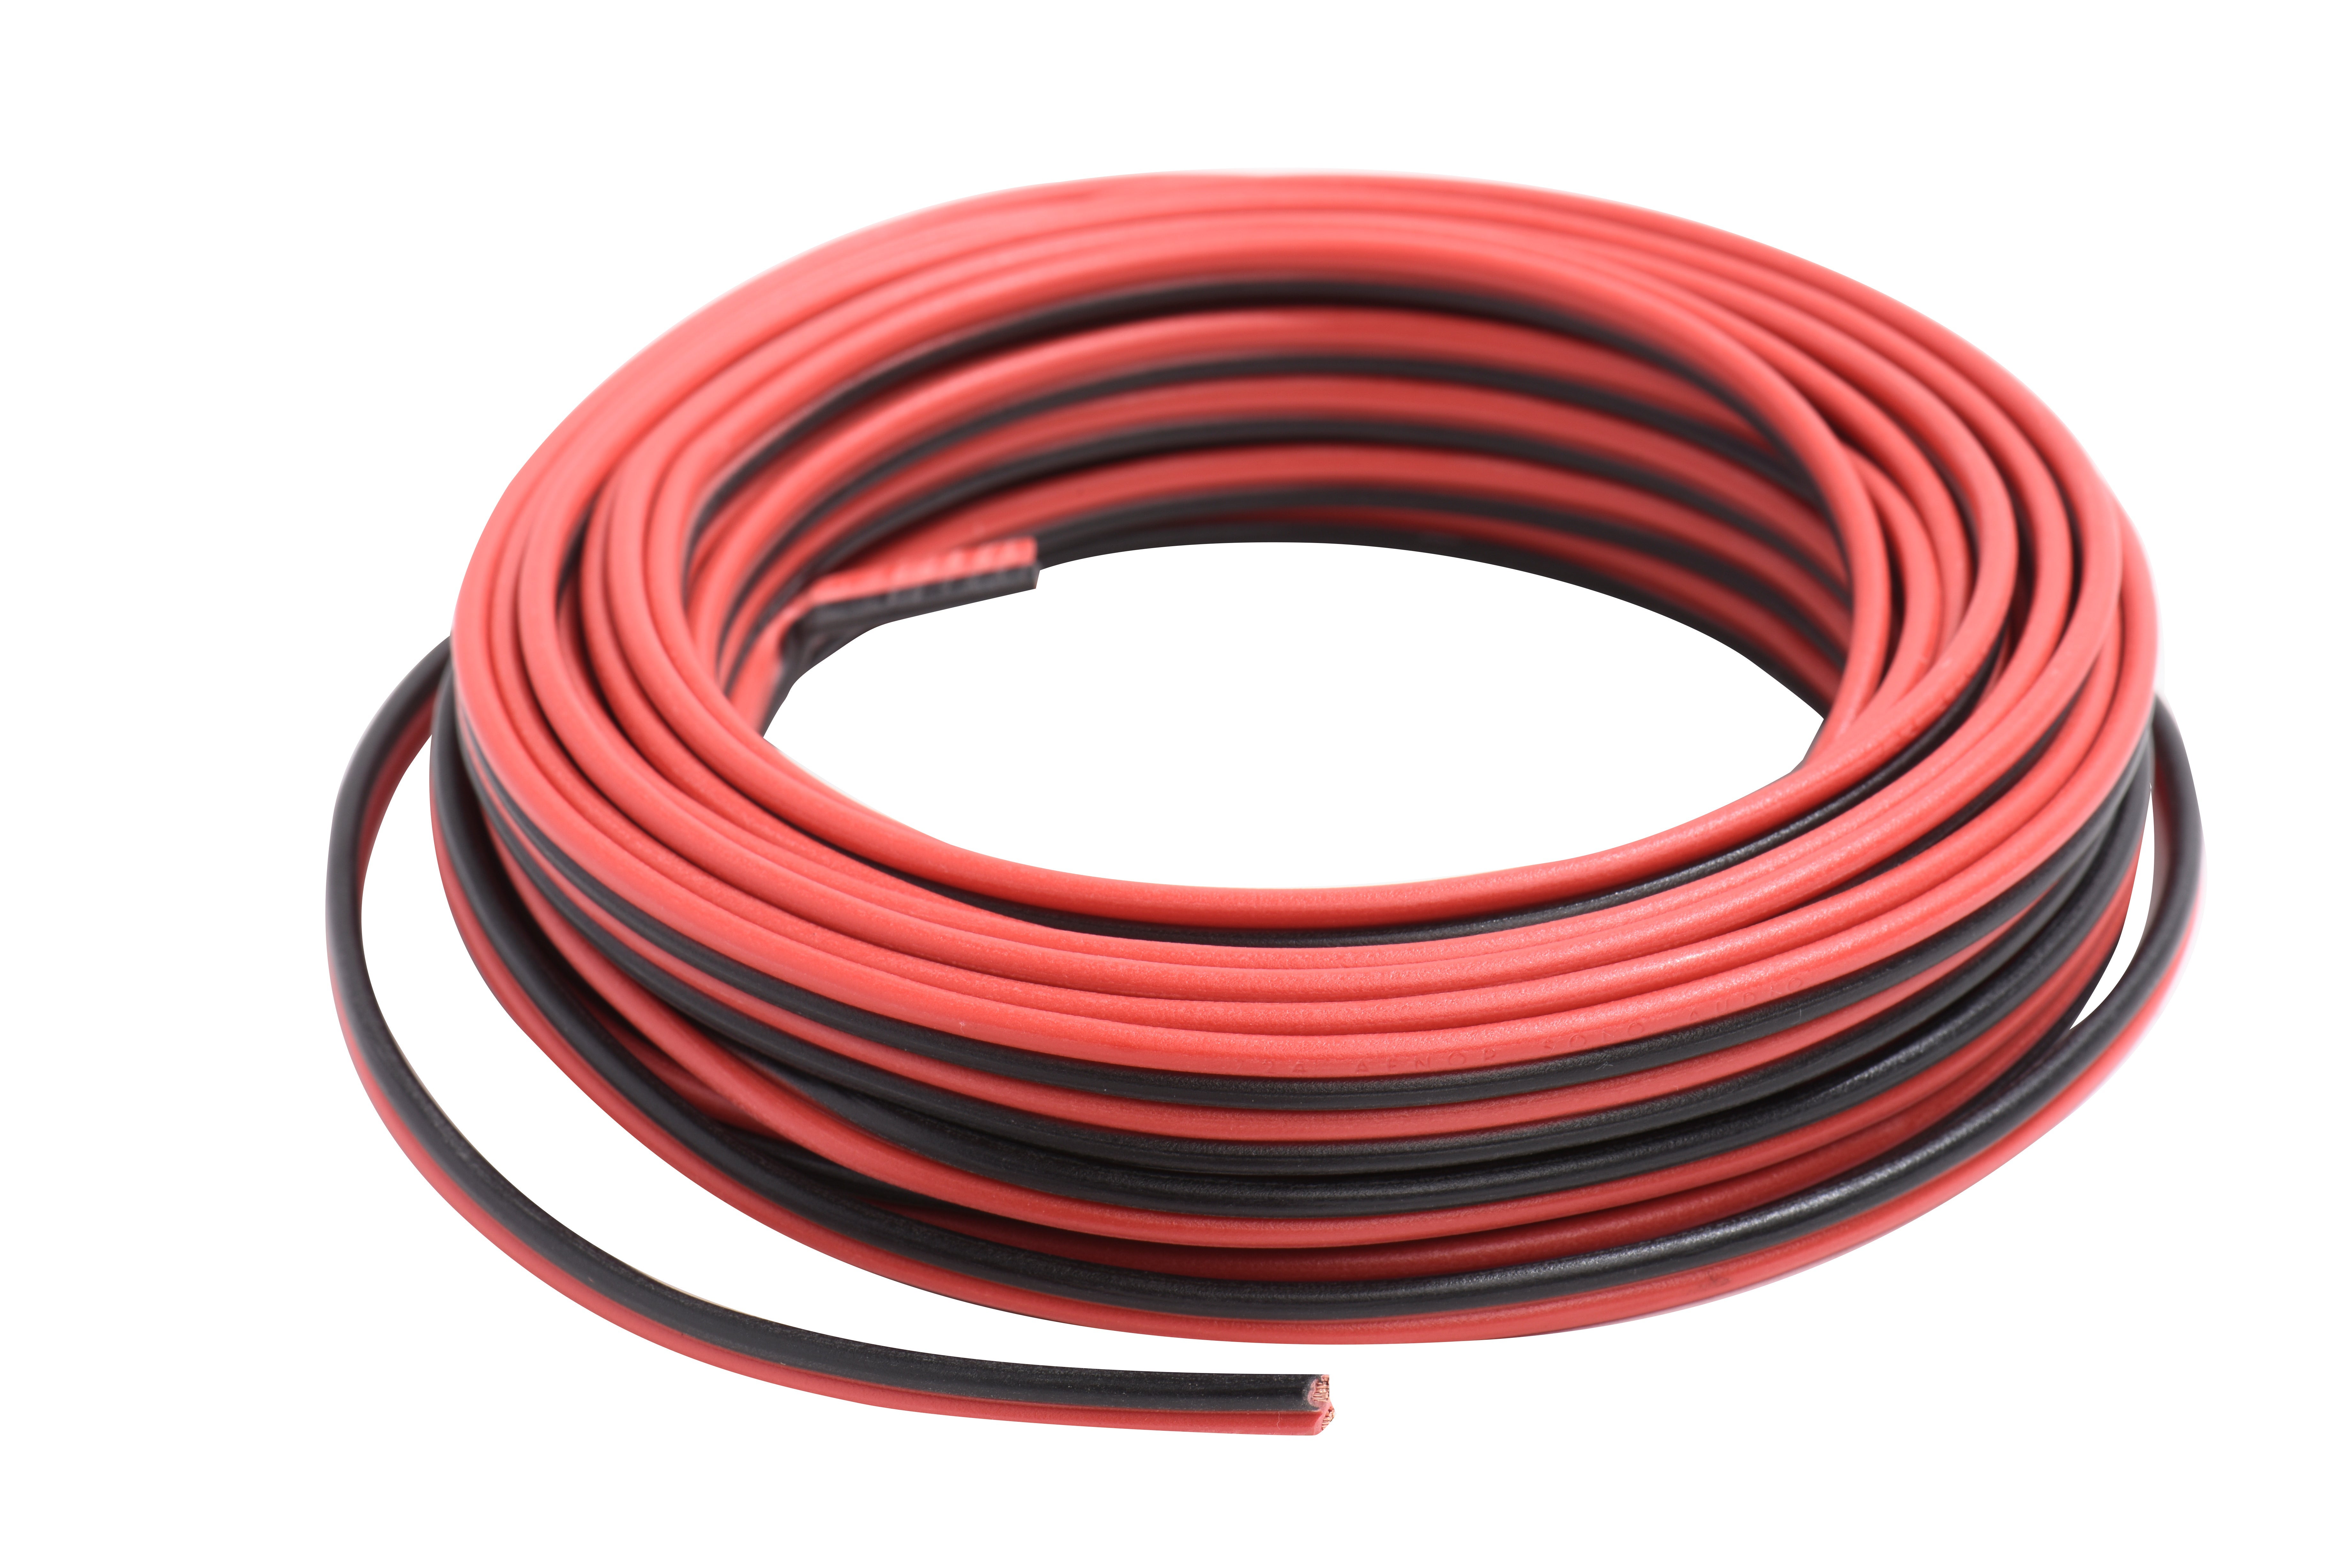 Bematik - Cable De Audio Para Altavoces Rojo Y Negro De 2x1,50 Mm²